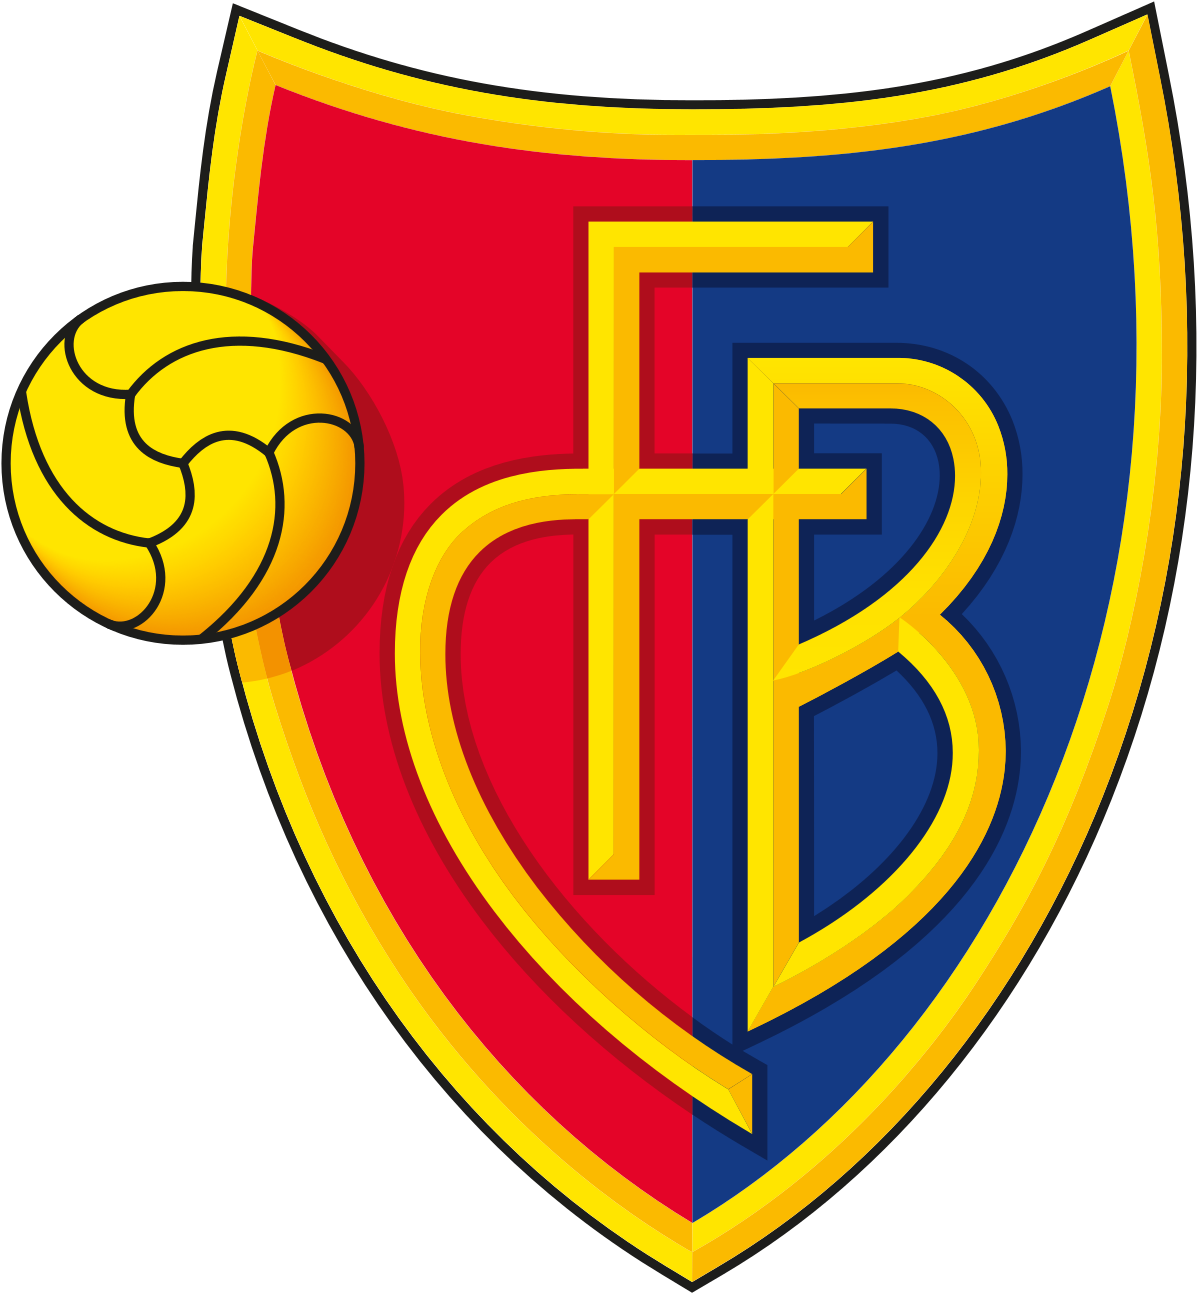 Basel W logo